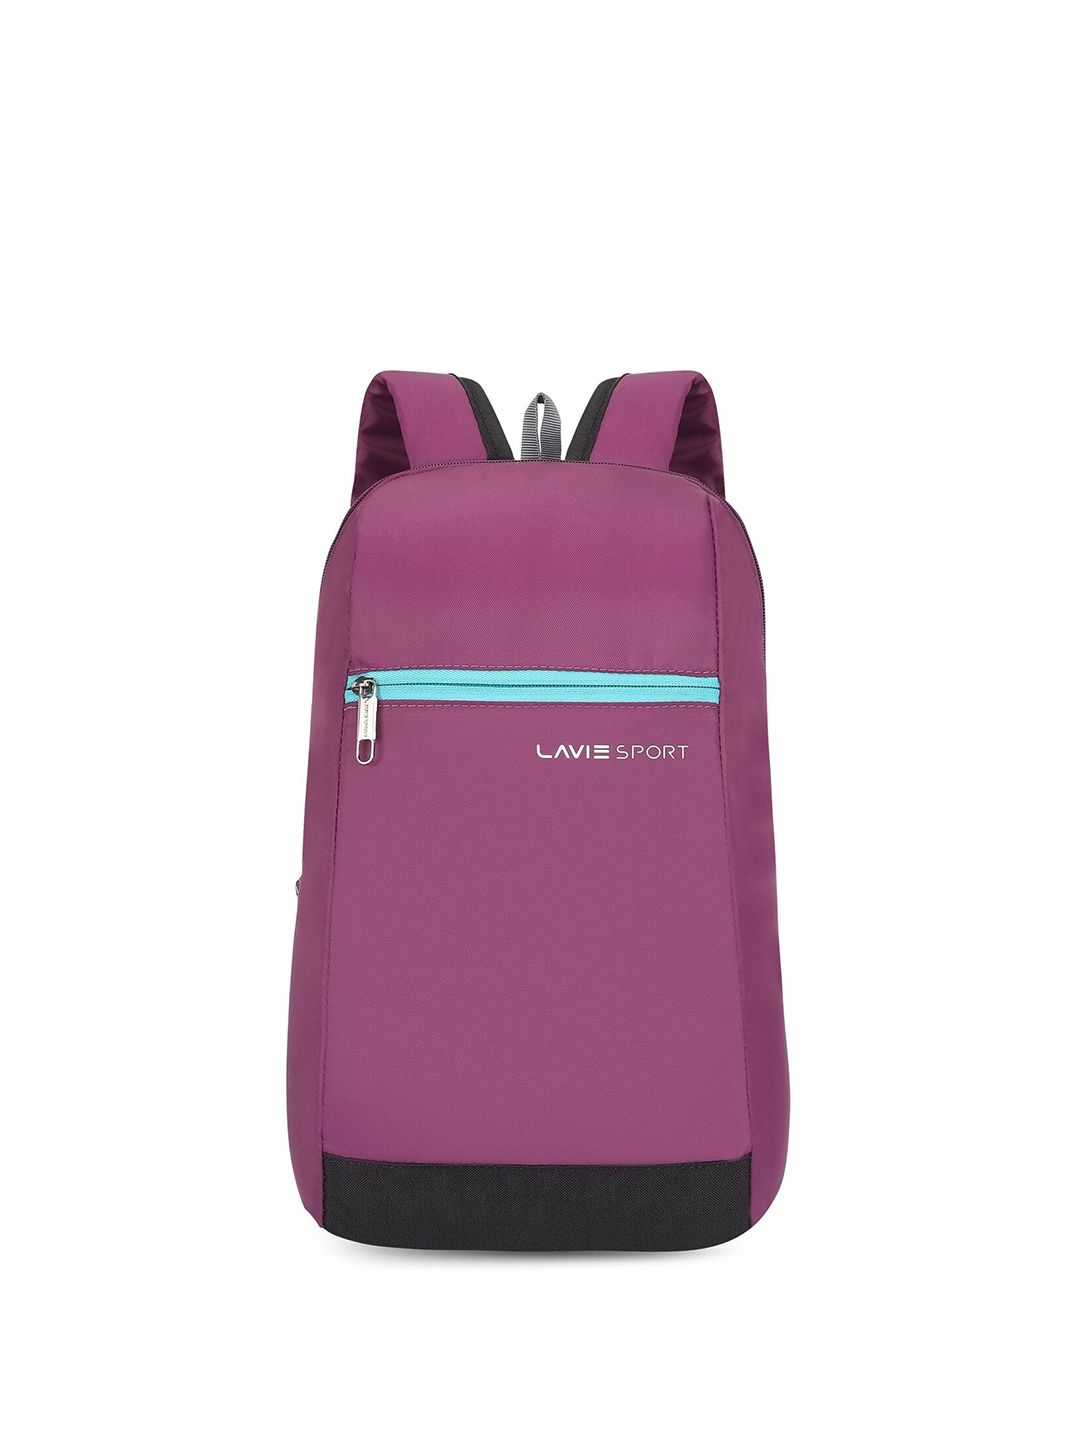 LAVIE SPORT Unisex Brand Logo Backpack